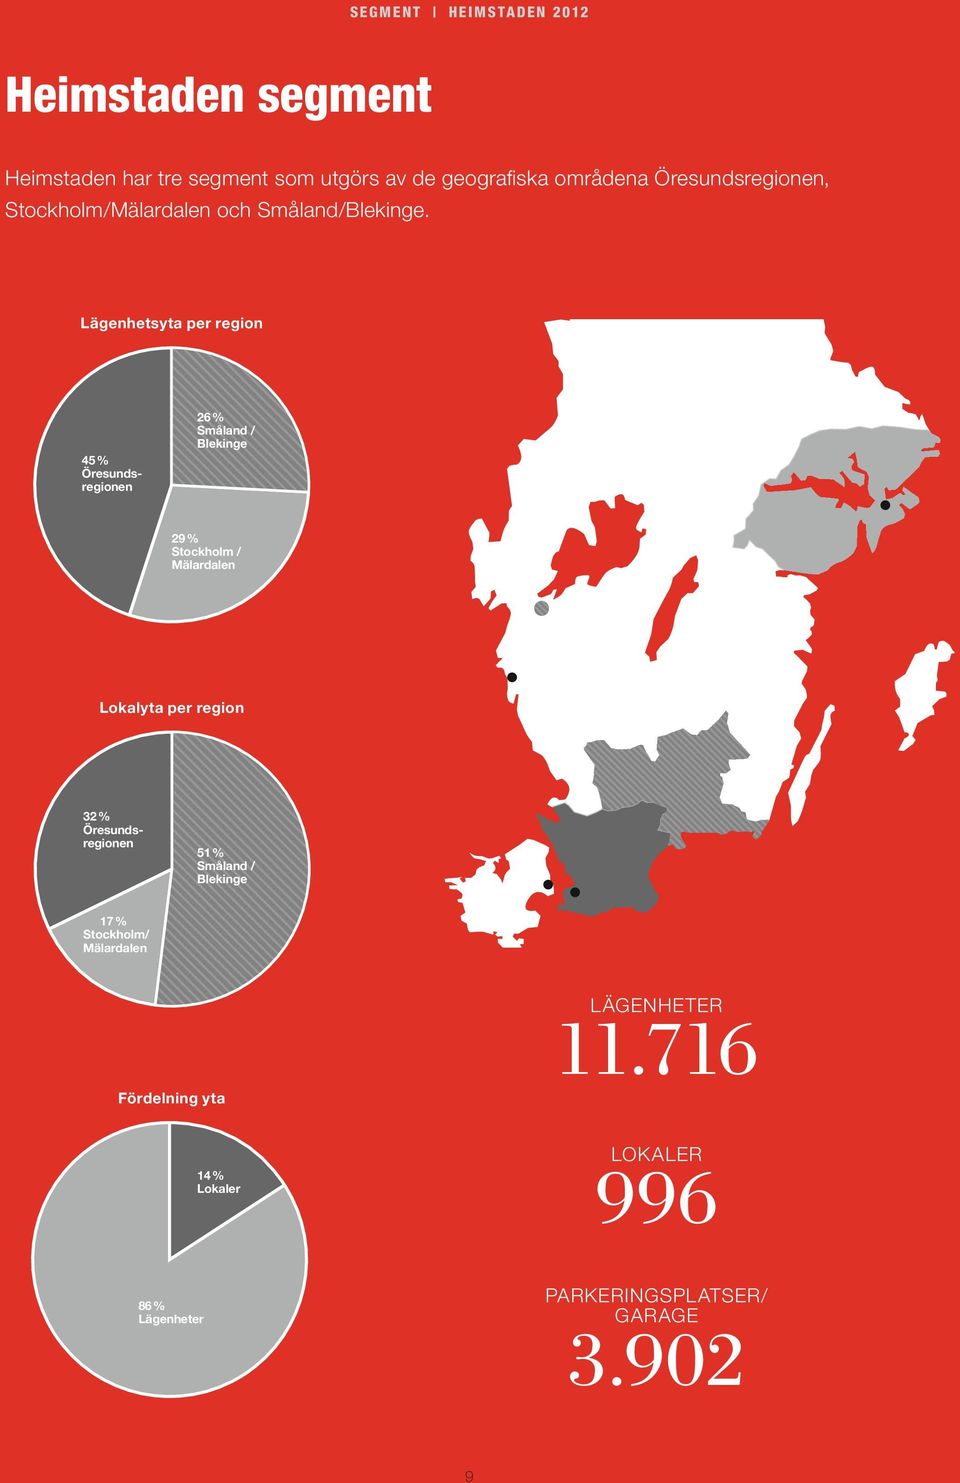 Lägenhetsyta per region 45 % Öresundsregionen 26 % Småland / Blekinge 29 % Stockholm / Mälardalen Lokalyta per